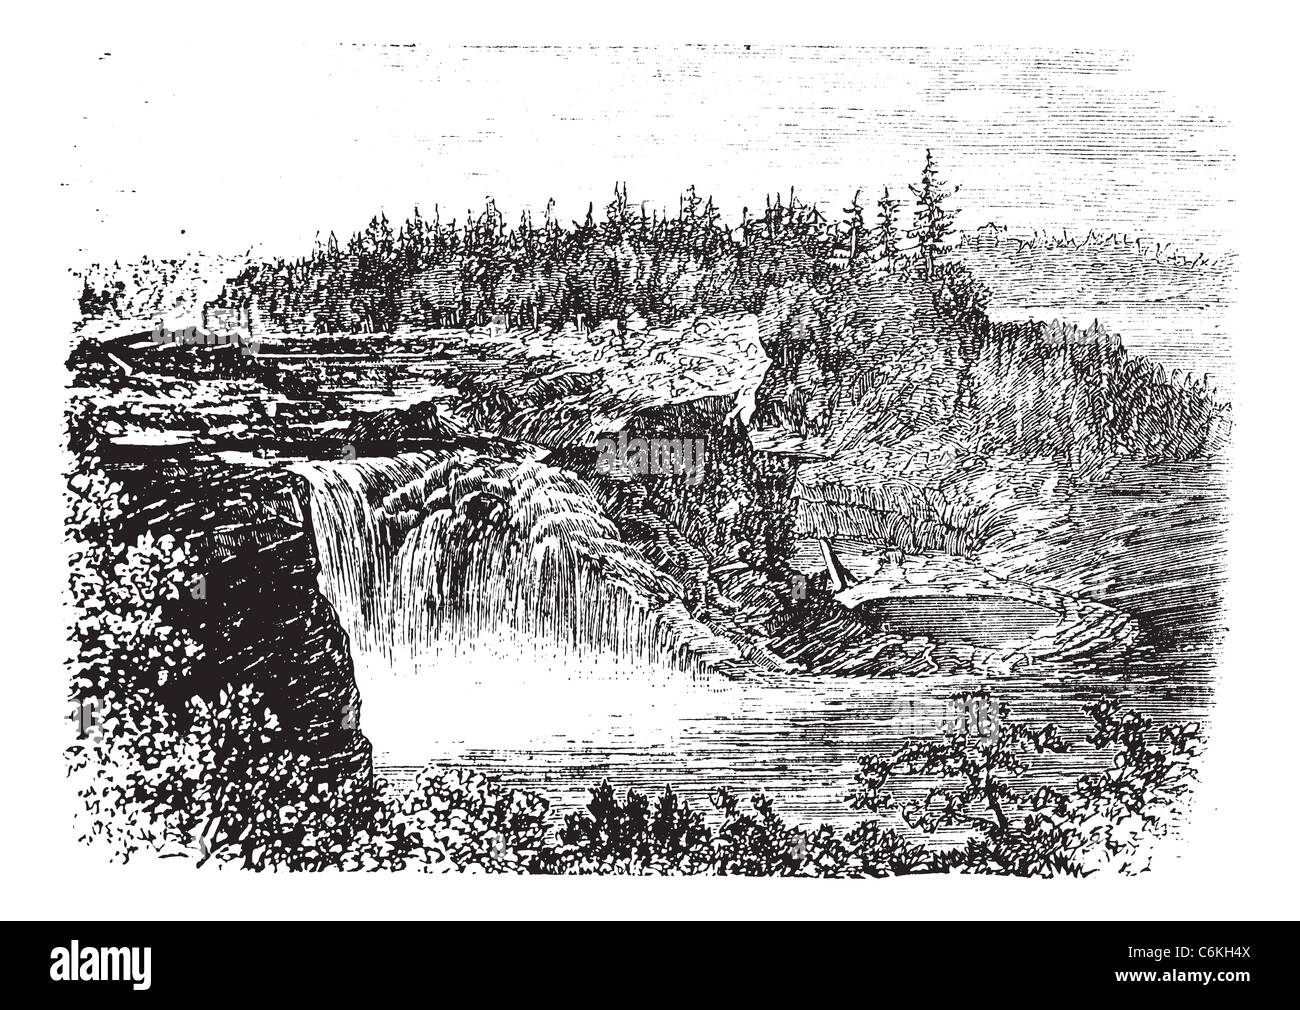 Chutes de la rivière Chaudière au Québec,Canada, vintage la gravure, au cours des années 1890. Vieille illustration gravée de la Kettle Falls. Banque D'Images